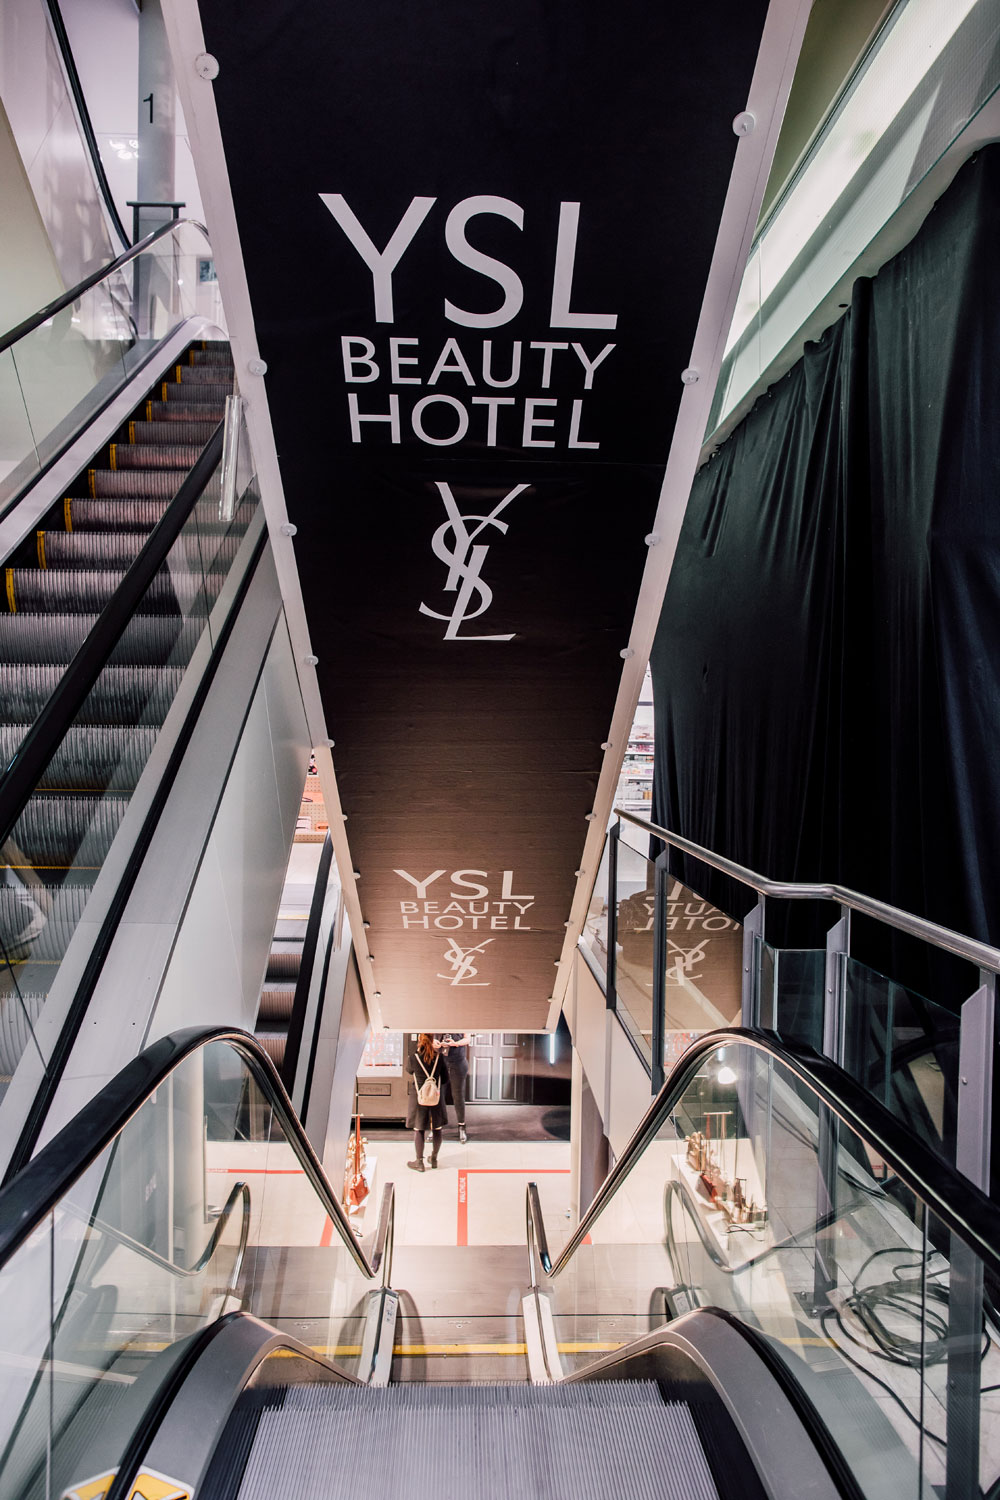 Noch bis zum 13. April kann man bei Manor Zürich im YSL Beauty Hotel einchecken und dabei ins Beauty-Universum des Luxusbrands eintauchen.